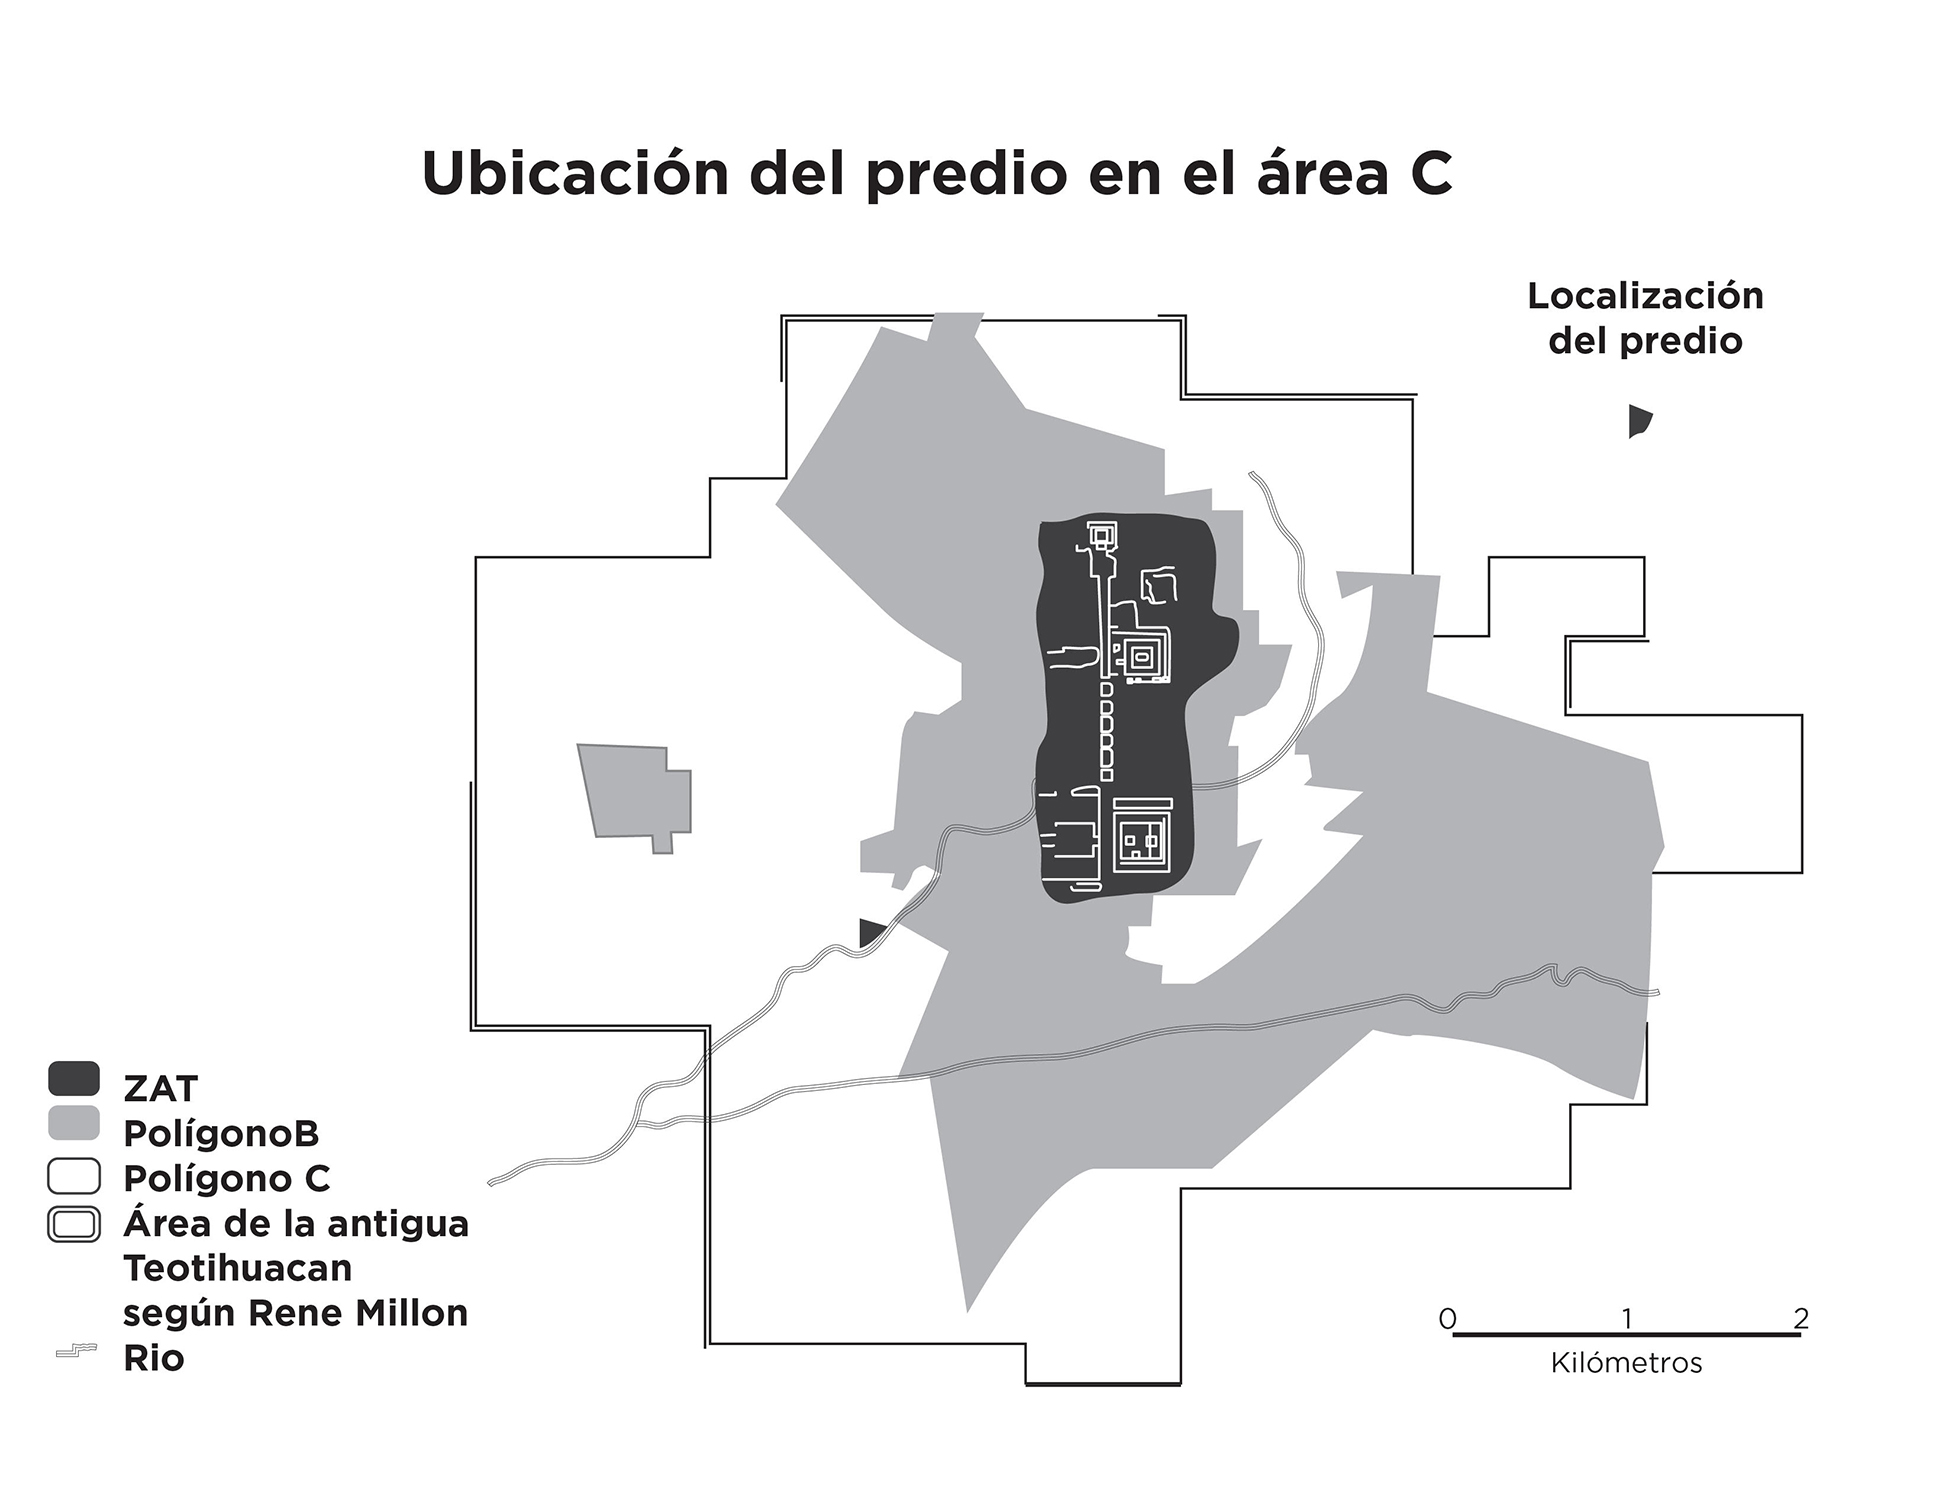 La Zona Arqueológica de Teotihuacán y la plaza comercial en el contorno urbano del municipio de San Juan